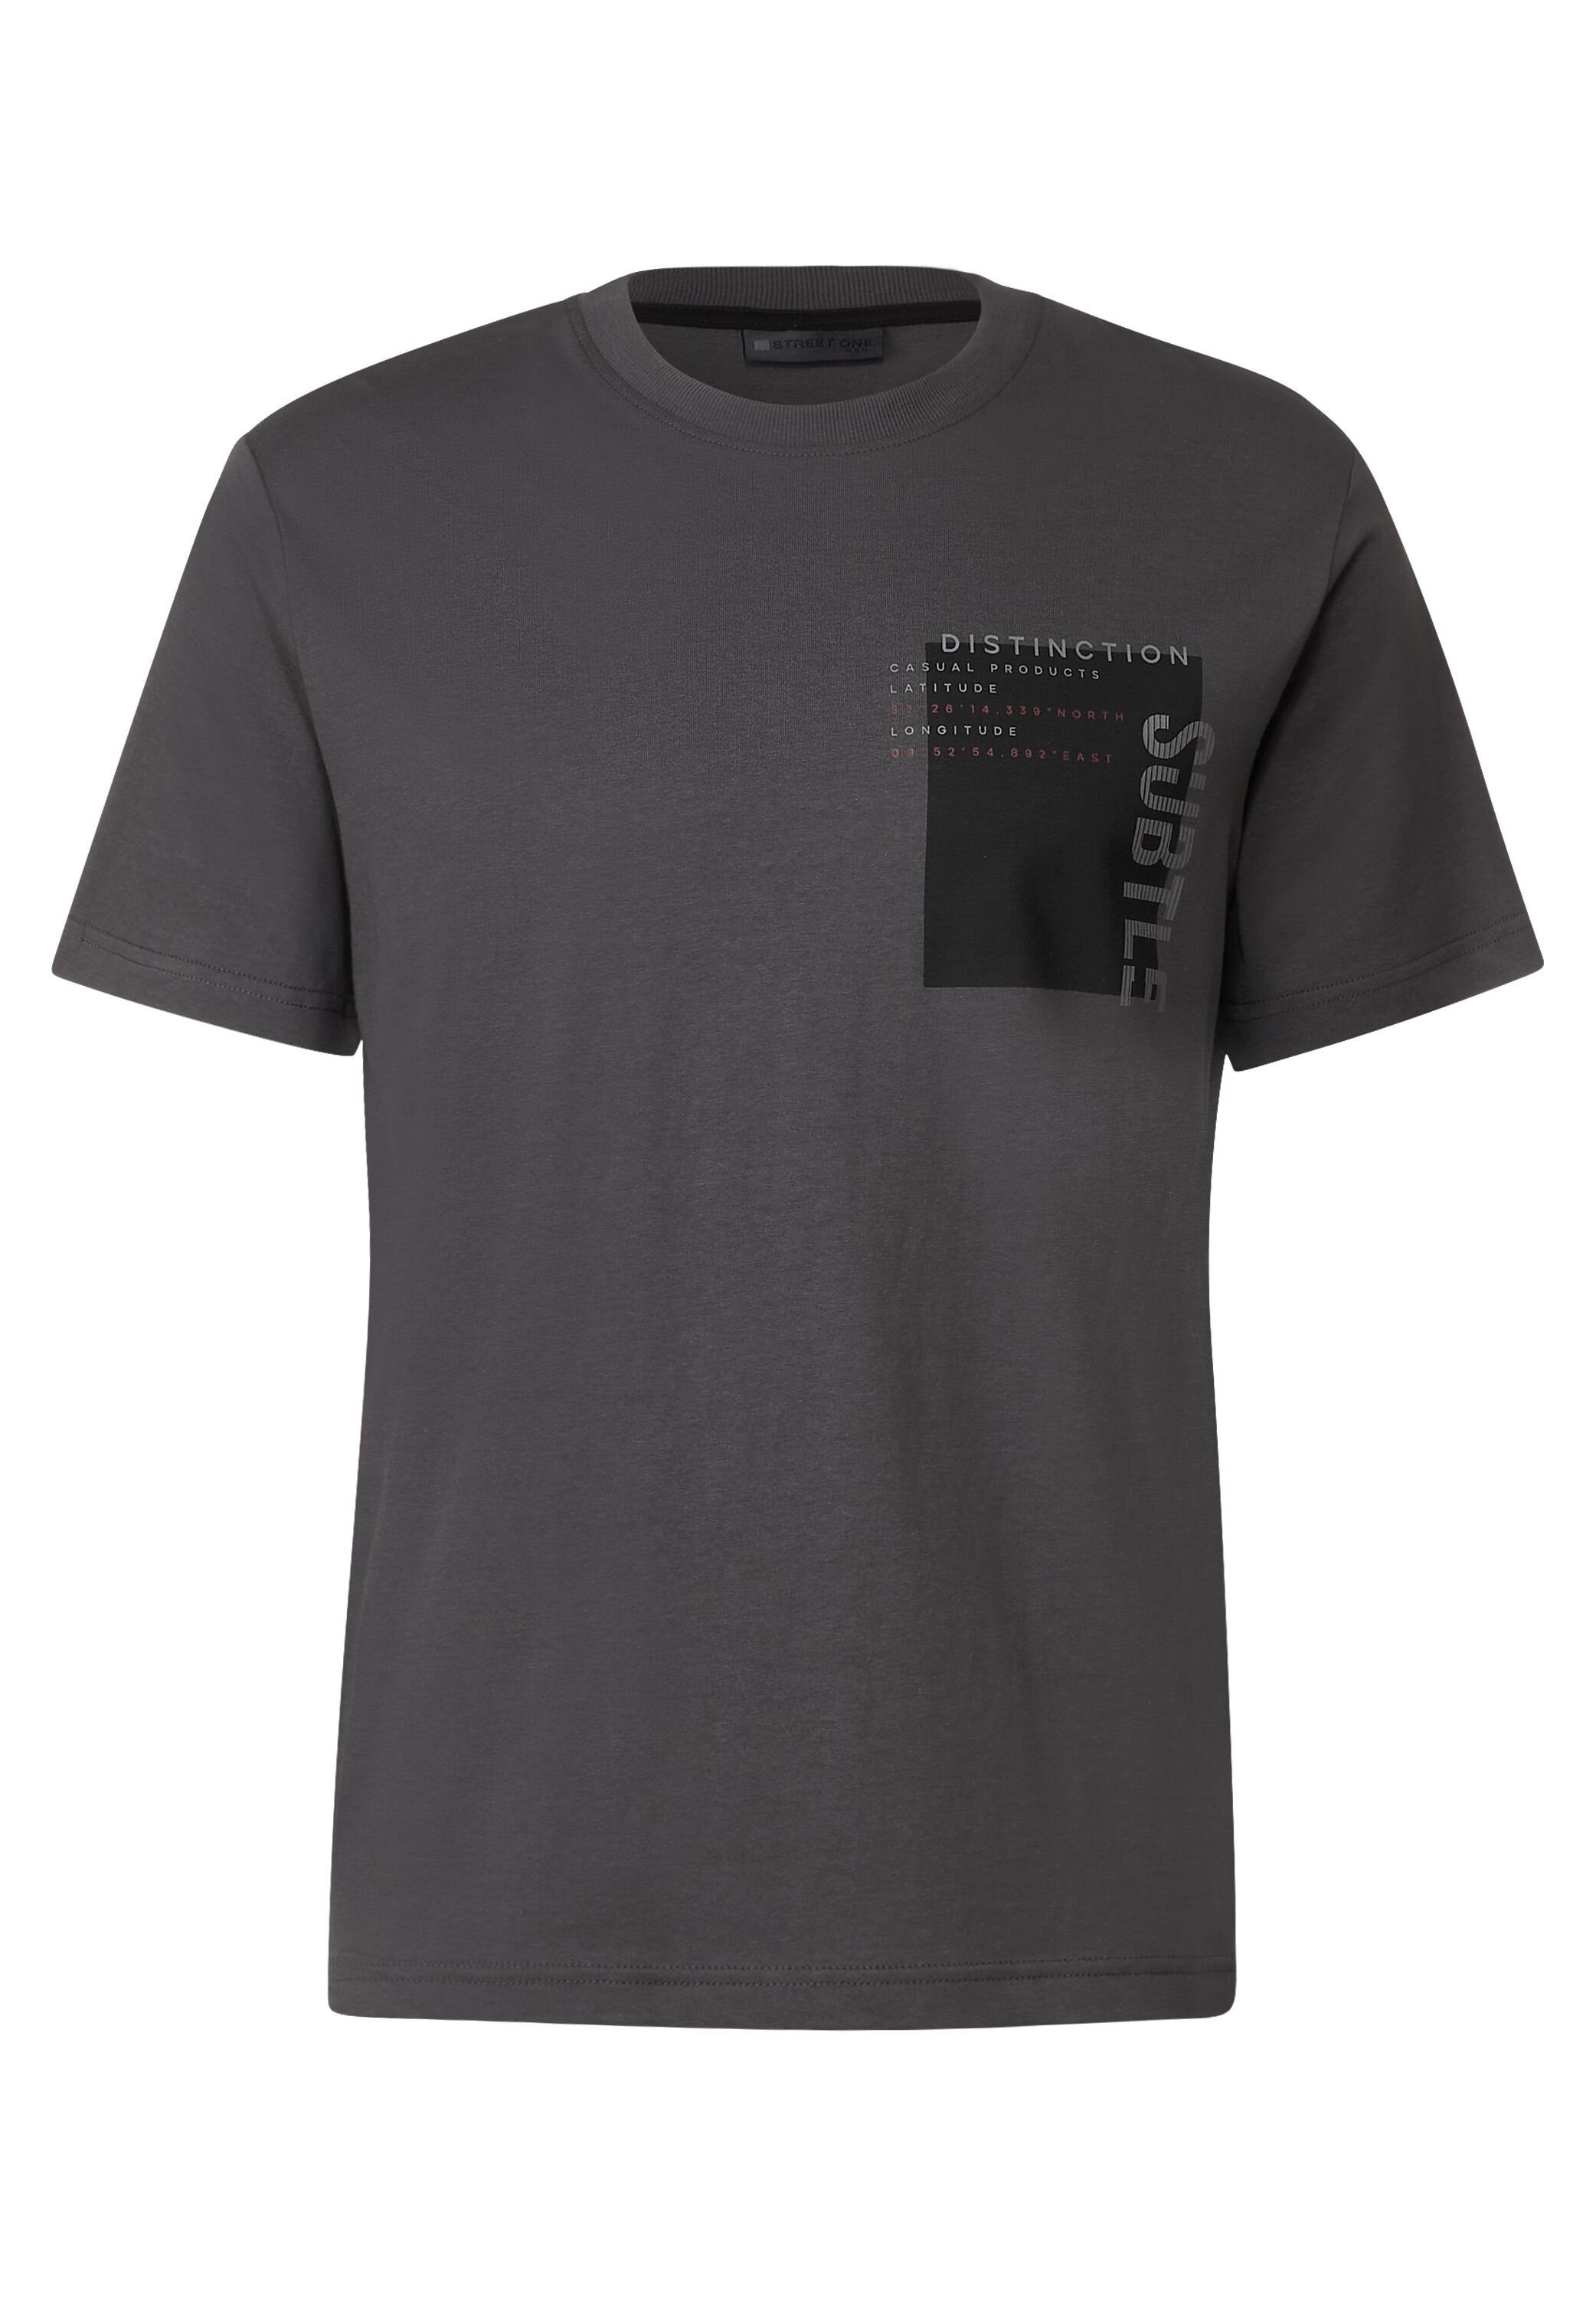 ONE iron T-Shirt STREET grey reiner aus MEN Baumwolle dark